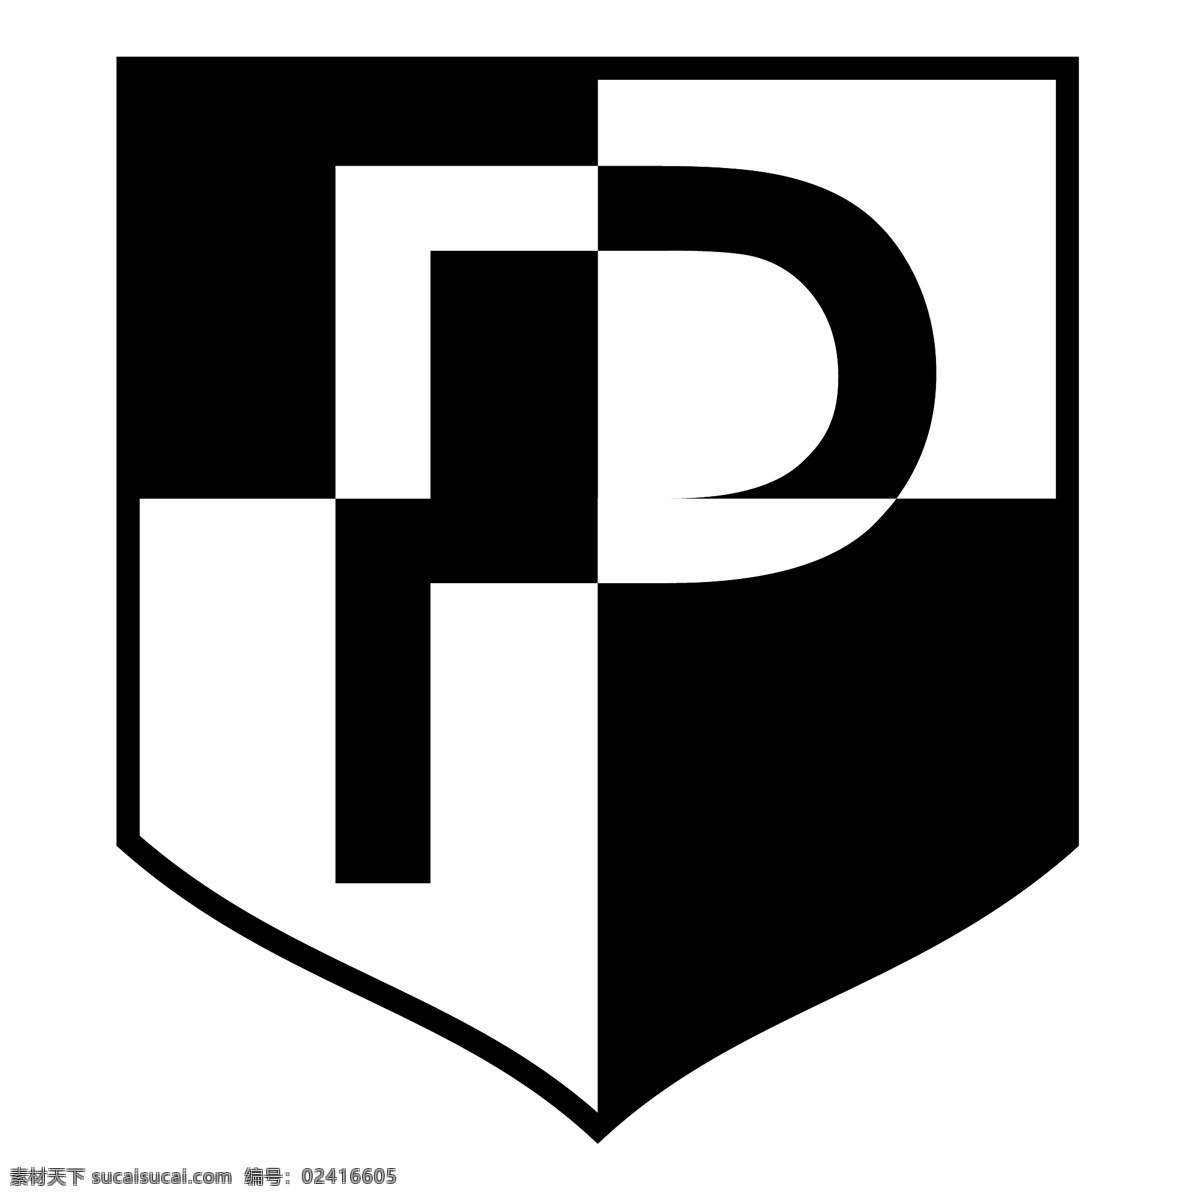 ks 波洛 尼亚 利兹 巴克 warminski 自由 标志 psd源文件 logo设计